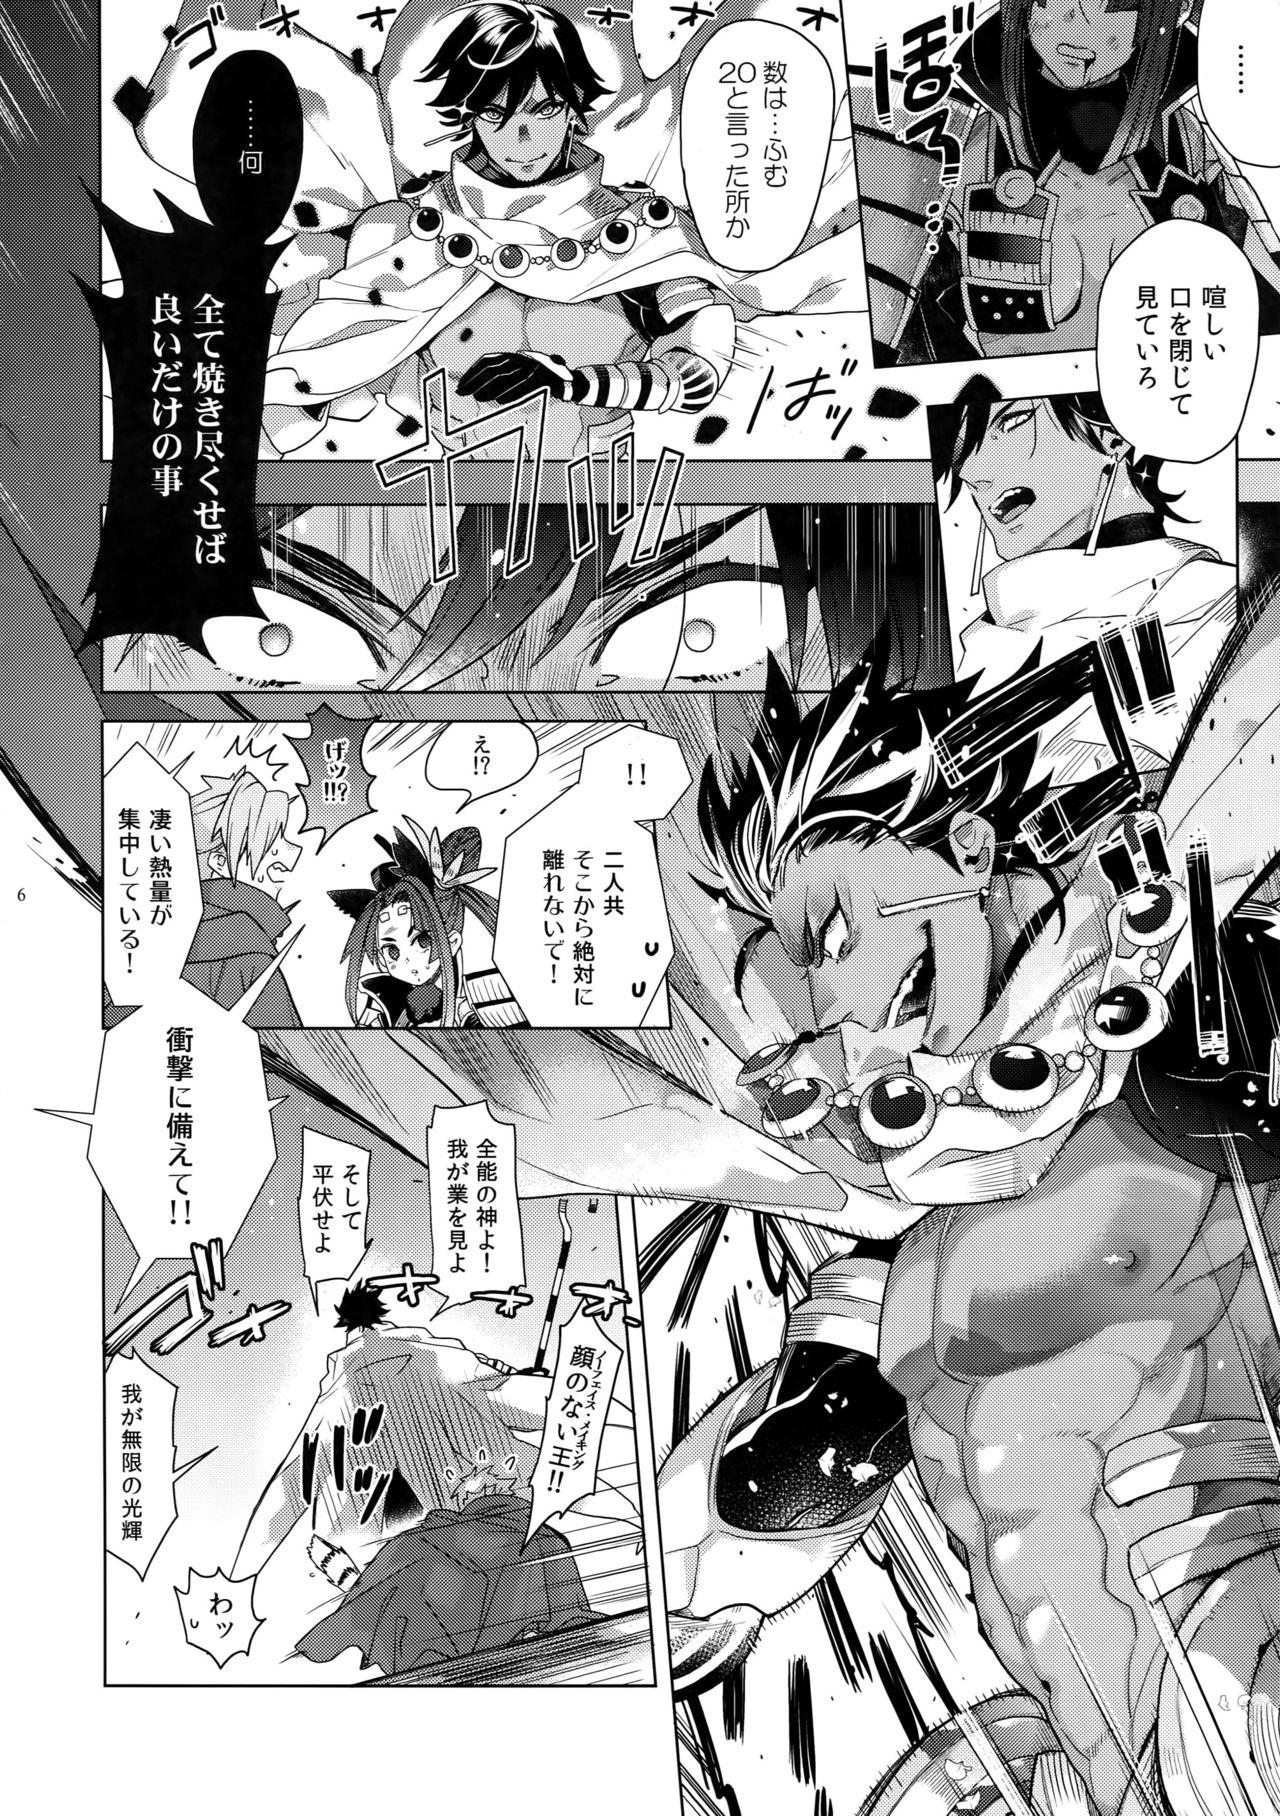 Students Giruoji Sairoku-shuu 「gayo Re」 - Fate grand order Titties - Page 7